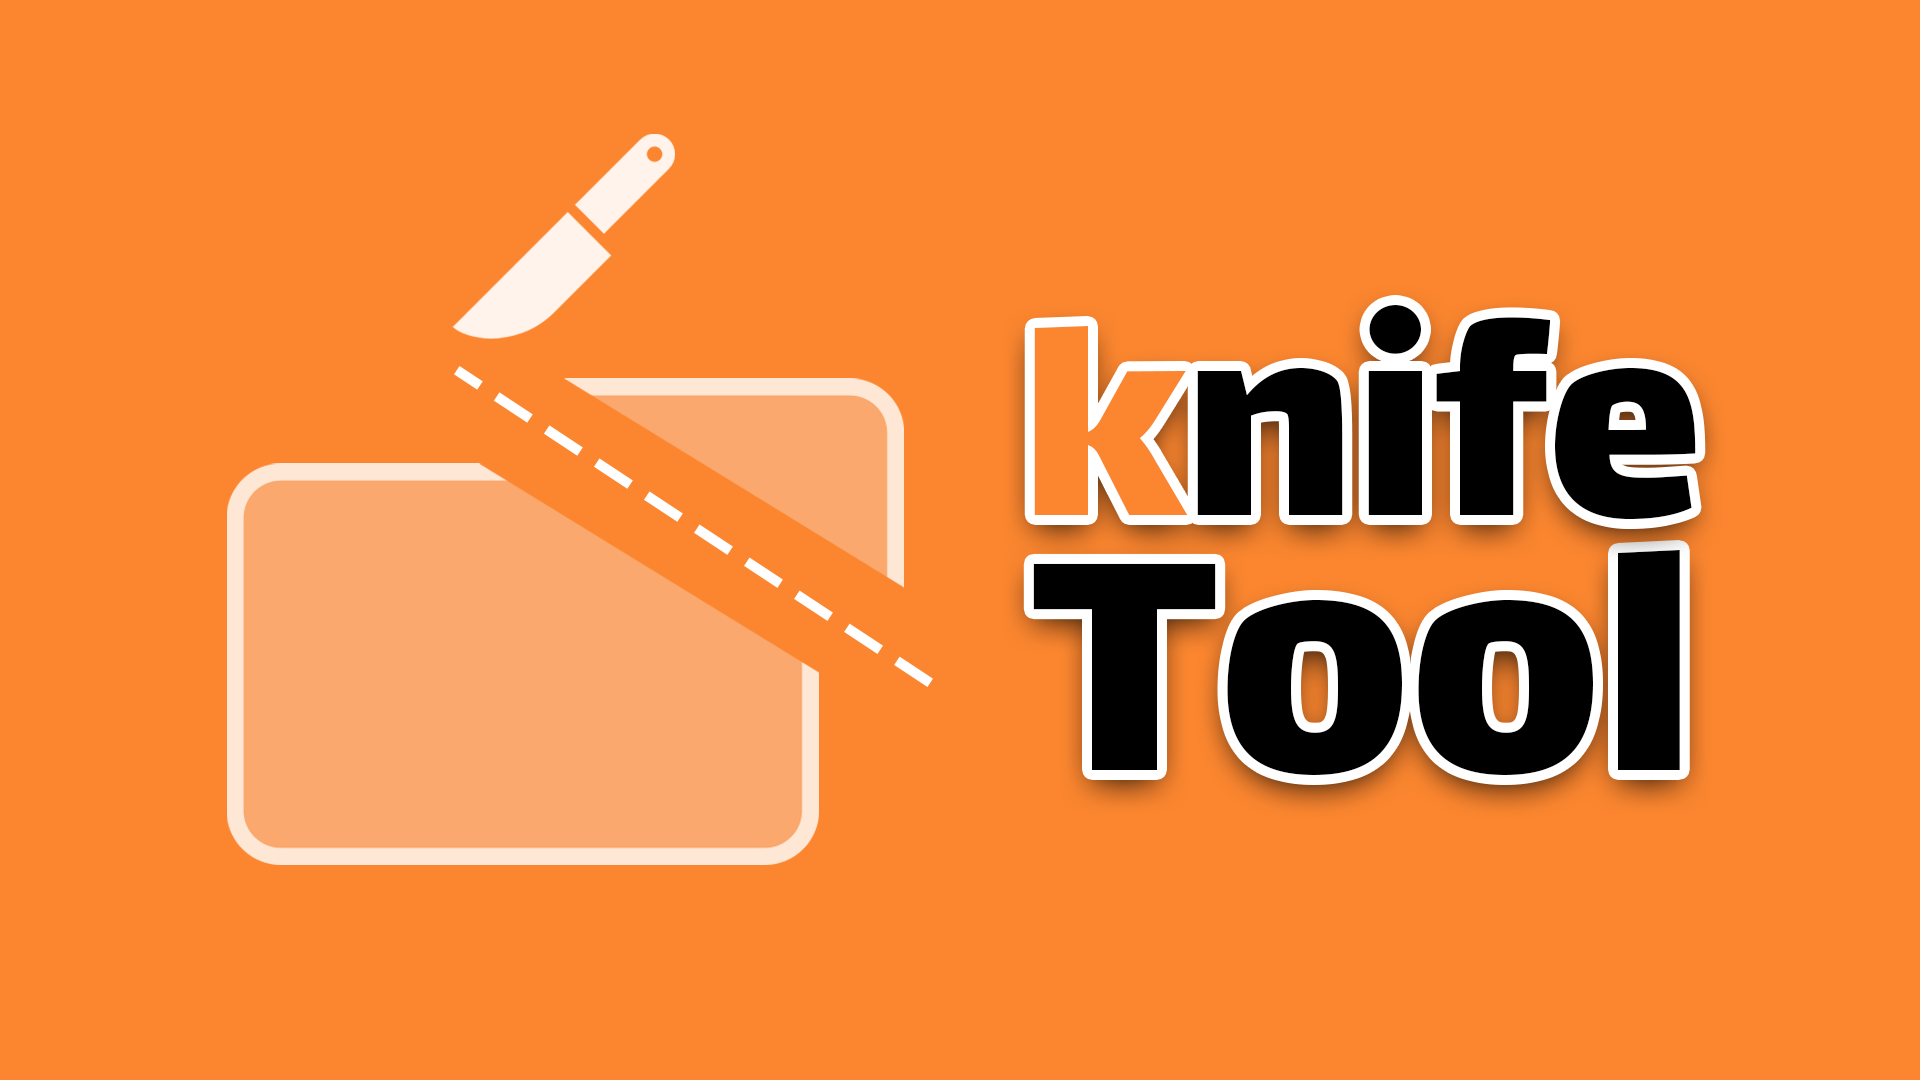 knife Tool in Adobe Illustrator